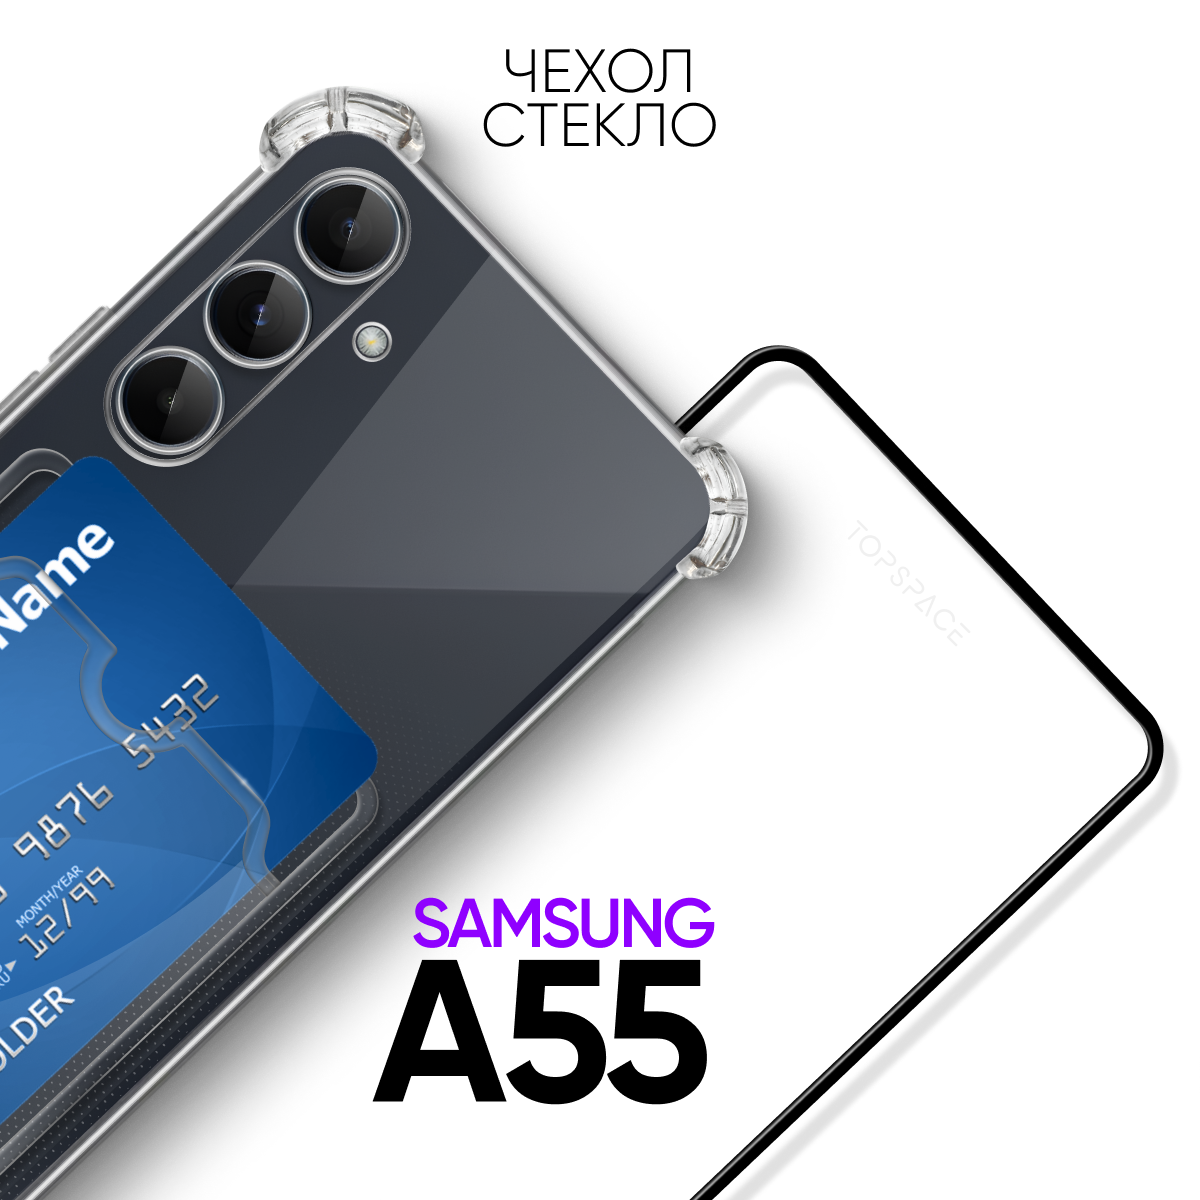 Комплект 2 в 1: Чехол №05 + стекло для Samsung Galaxy A55 / Самсунг Галакси А55 противоударный силиконовый прозрачный клип-кейс с защитой камеры